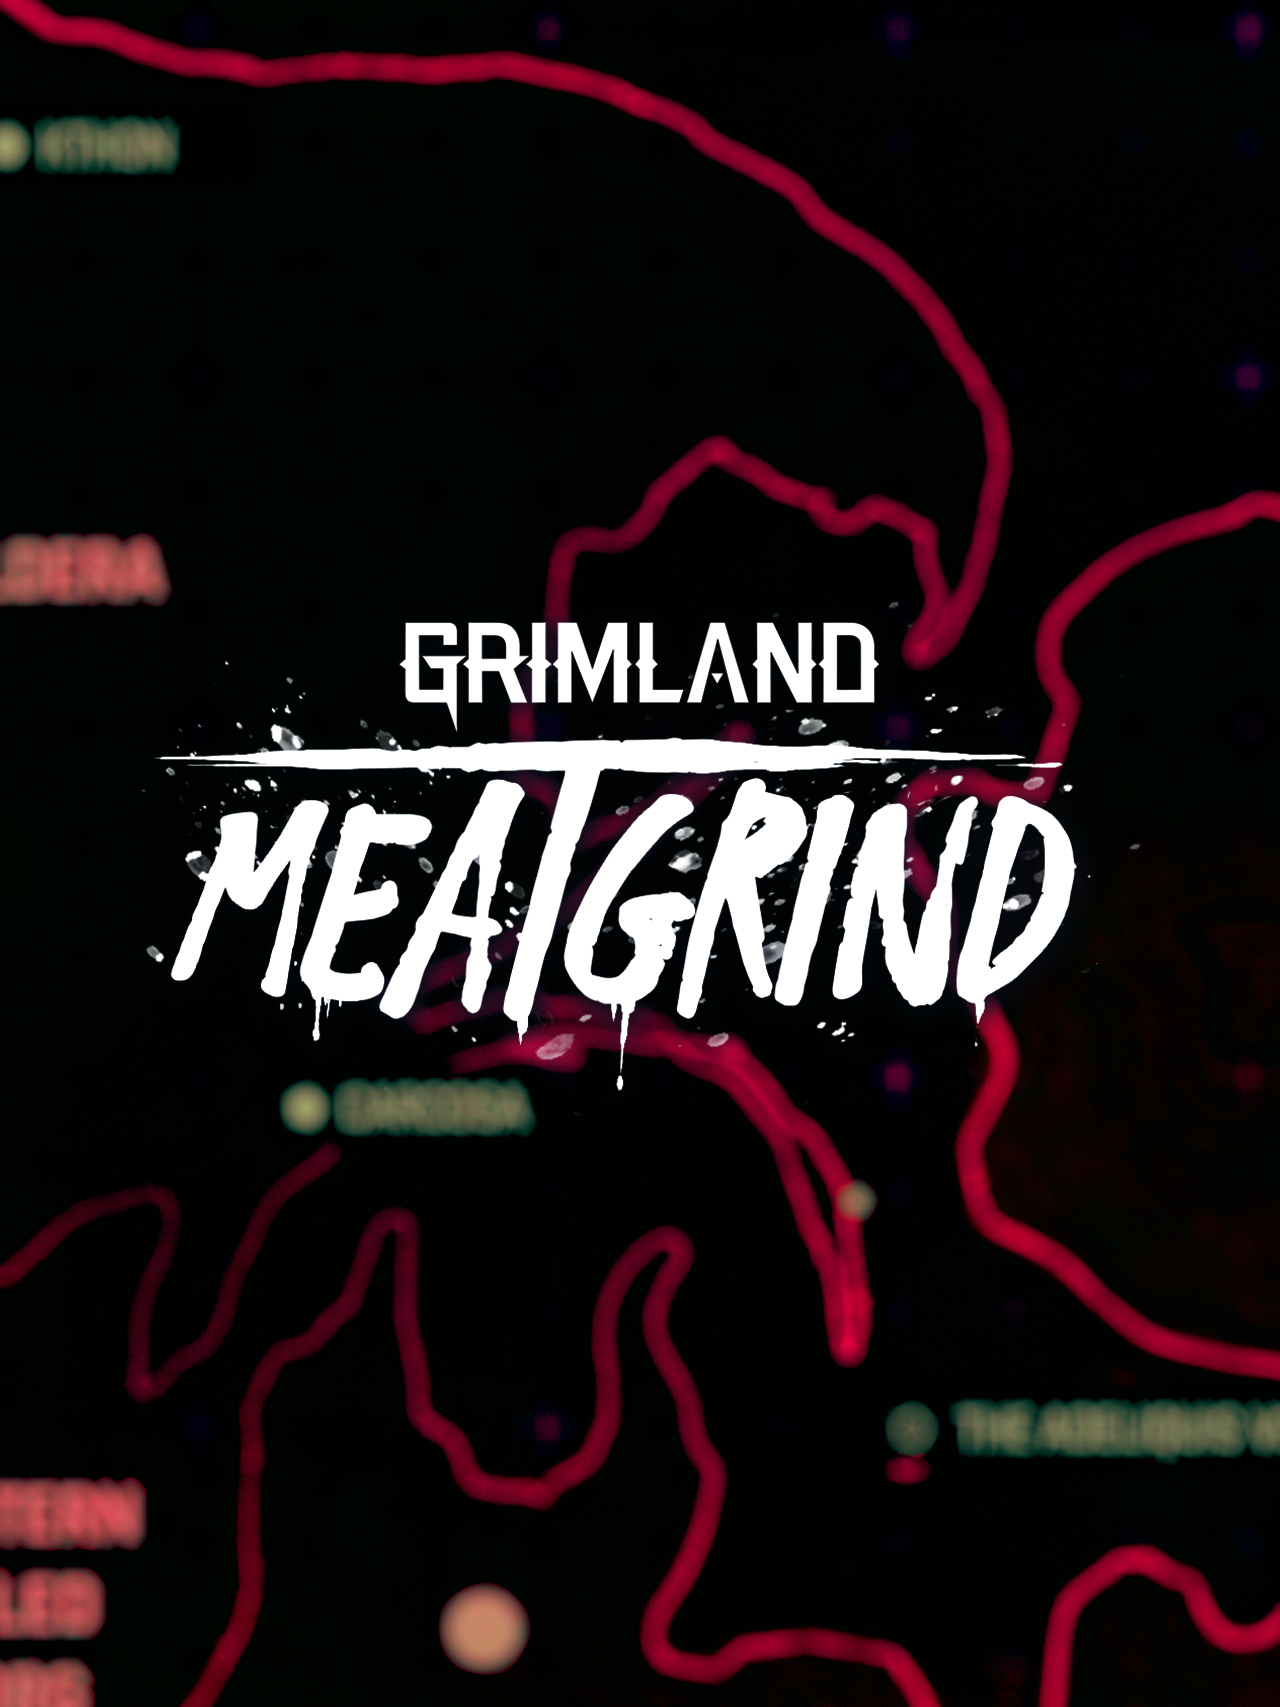 Grimland: Meatgrind